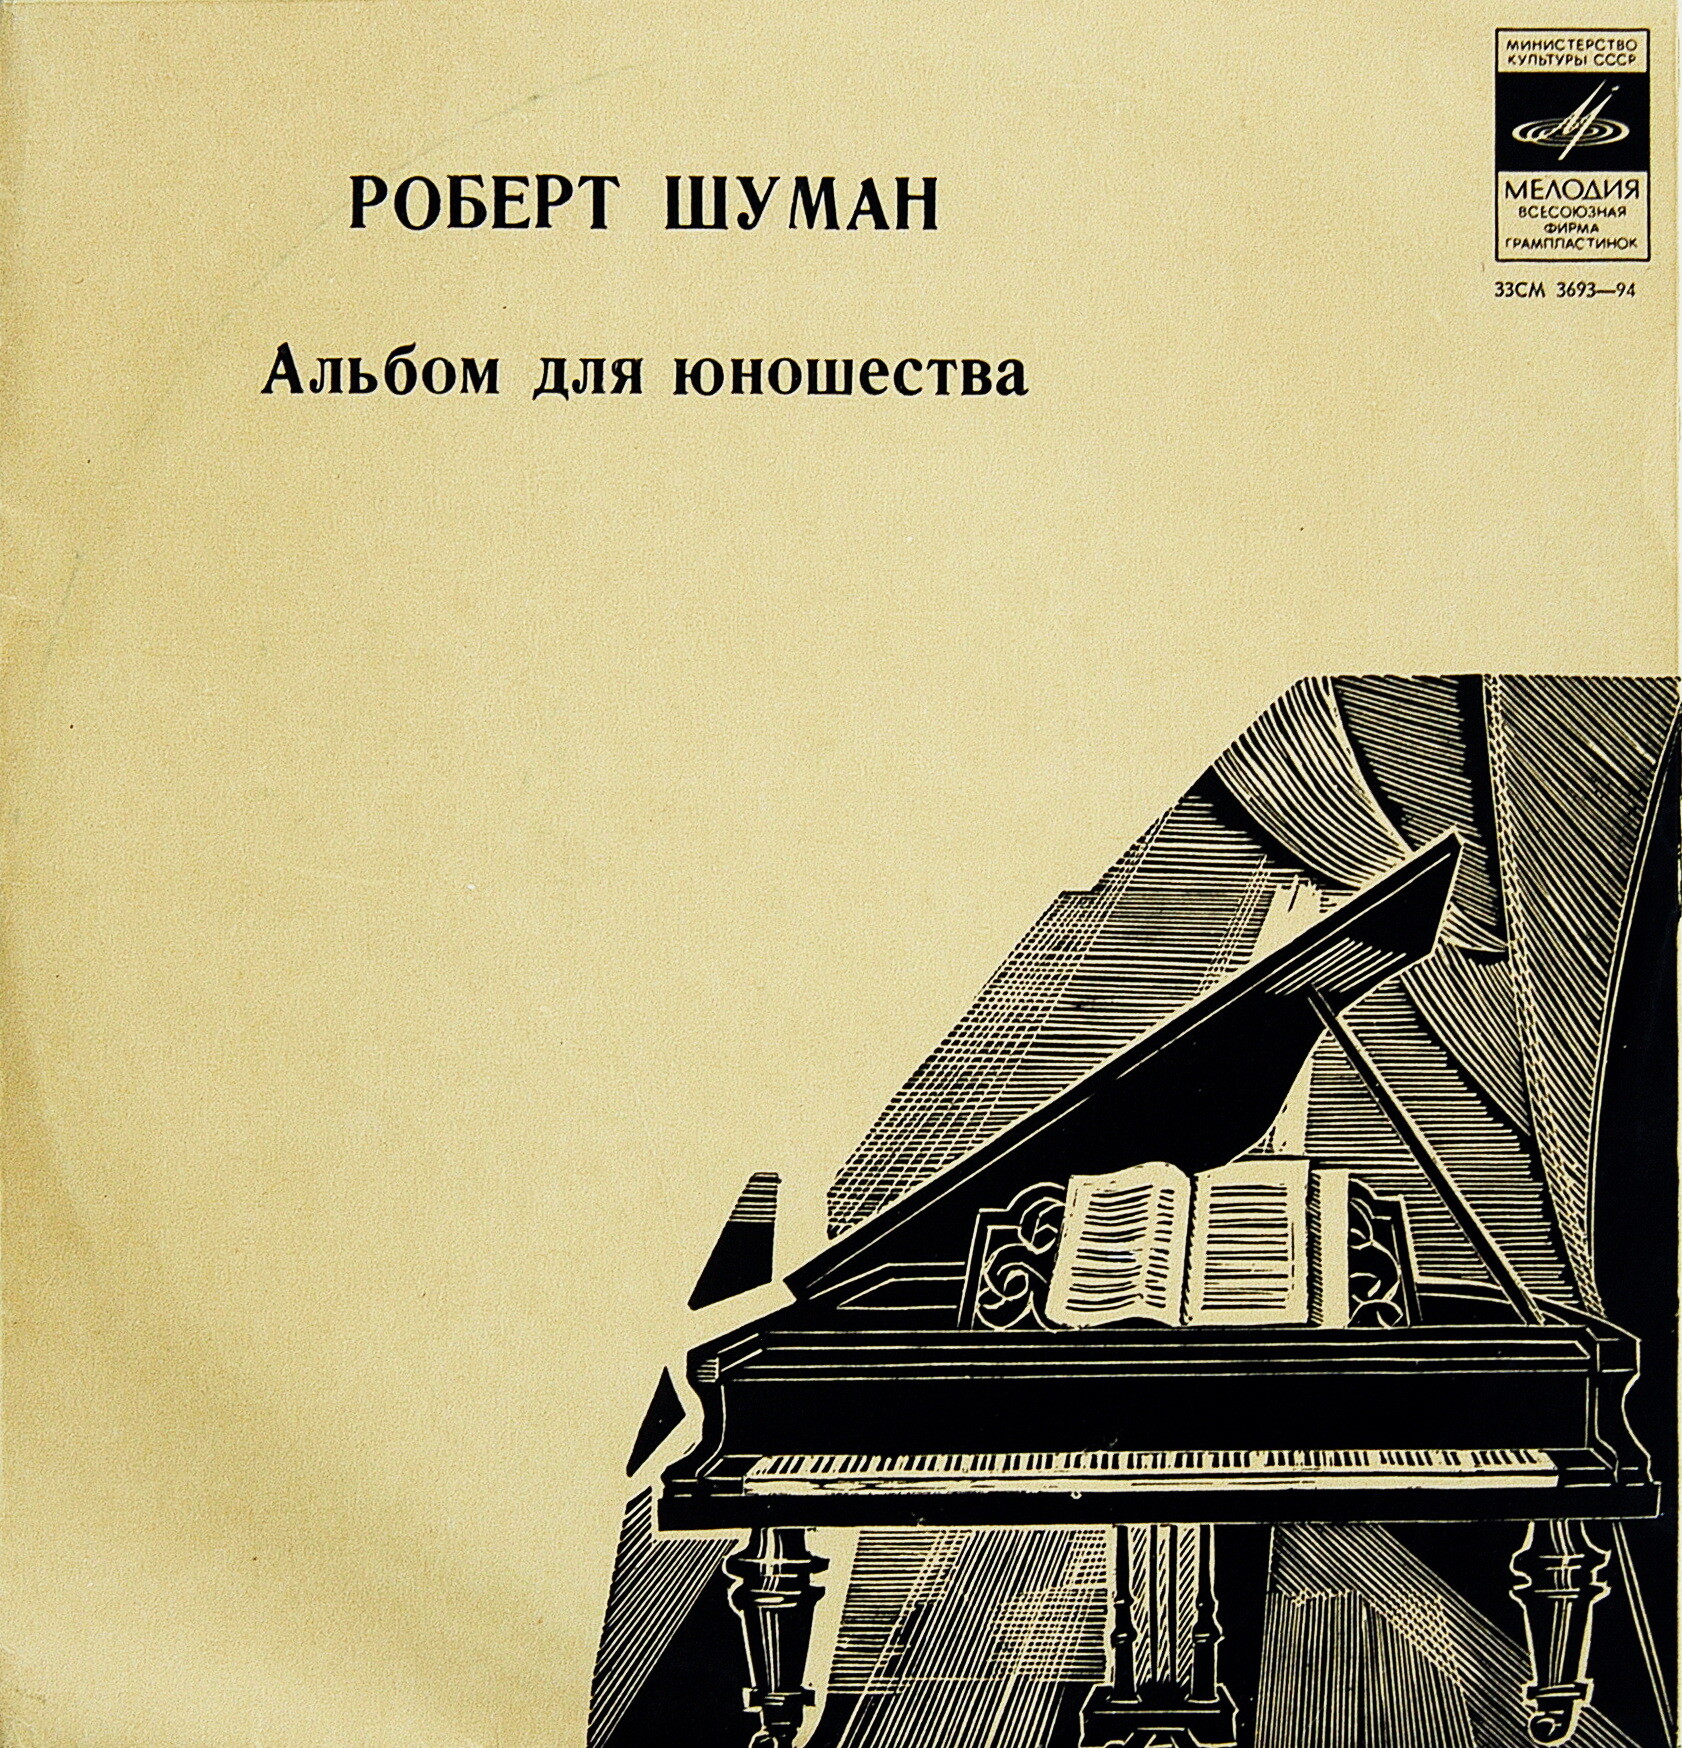 Р. ШУМАН (1810— 1856): «Альбом для юношества», избранные пьесы (А. Ведерников)